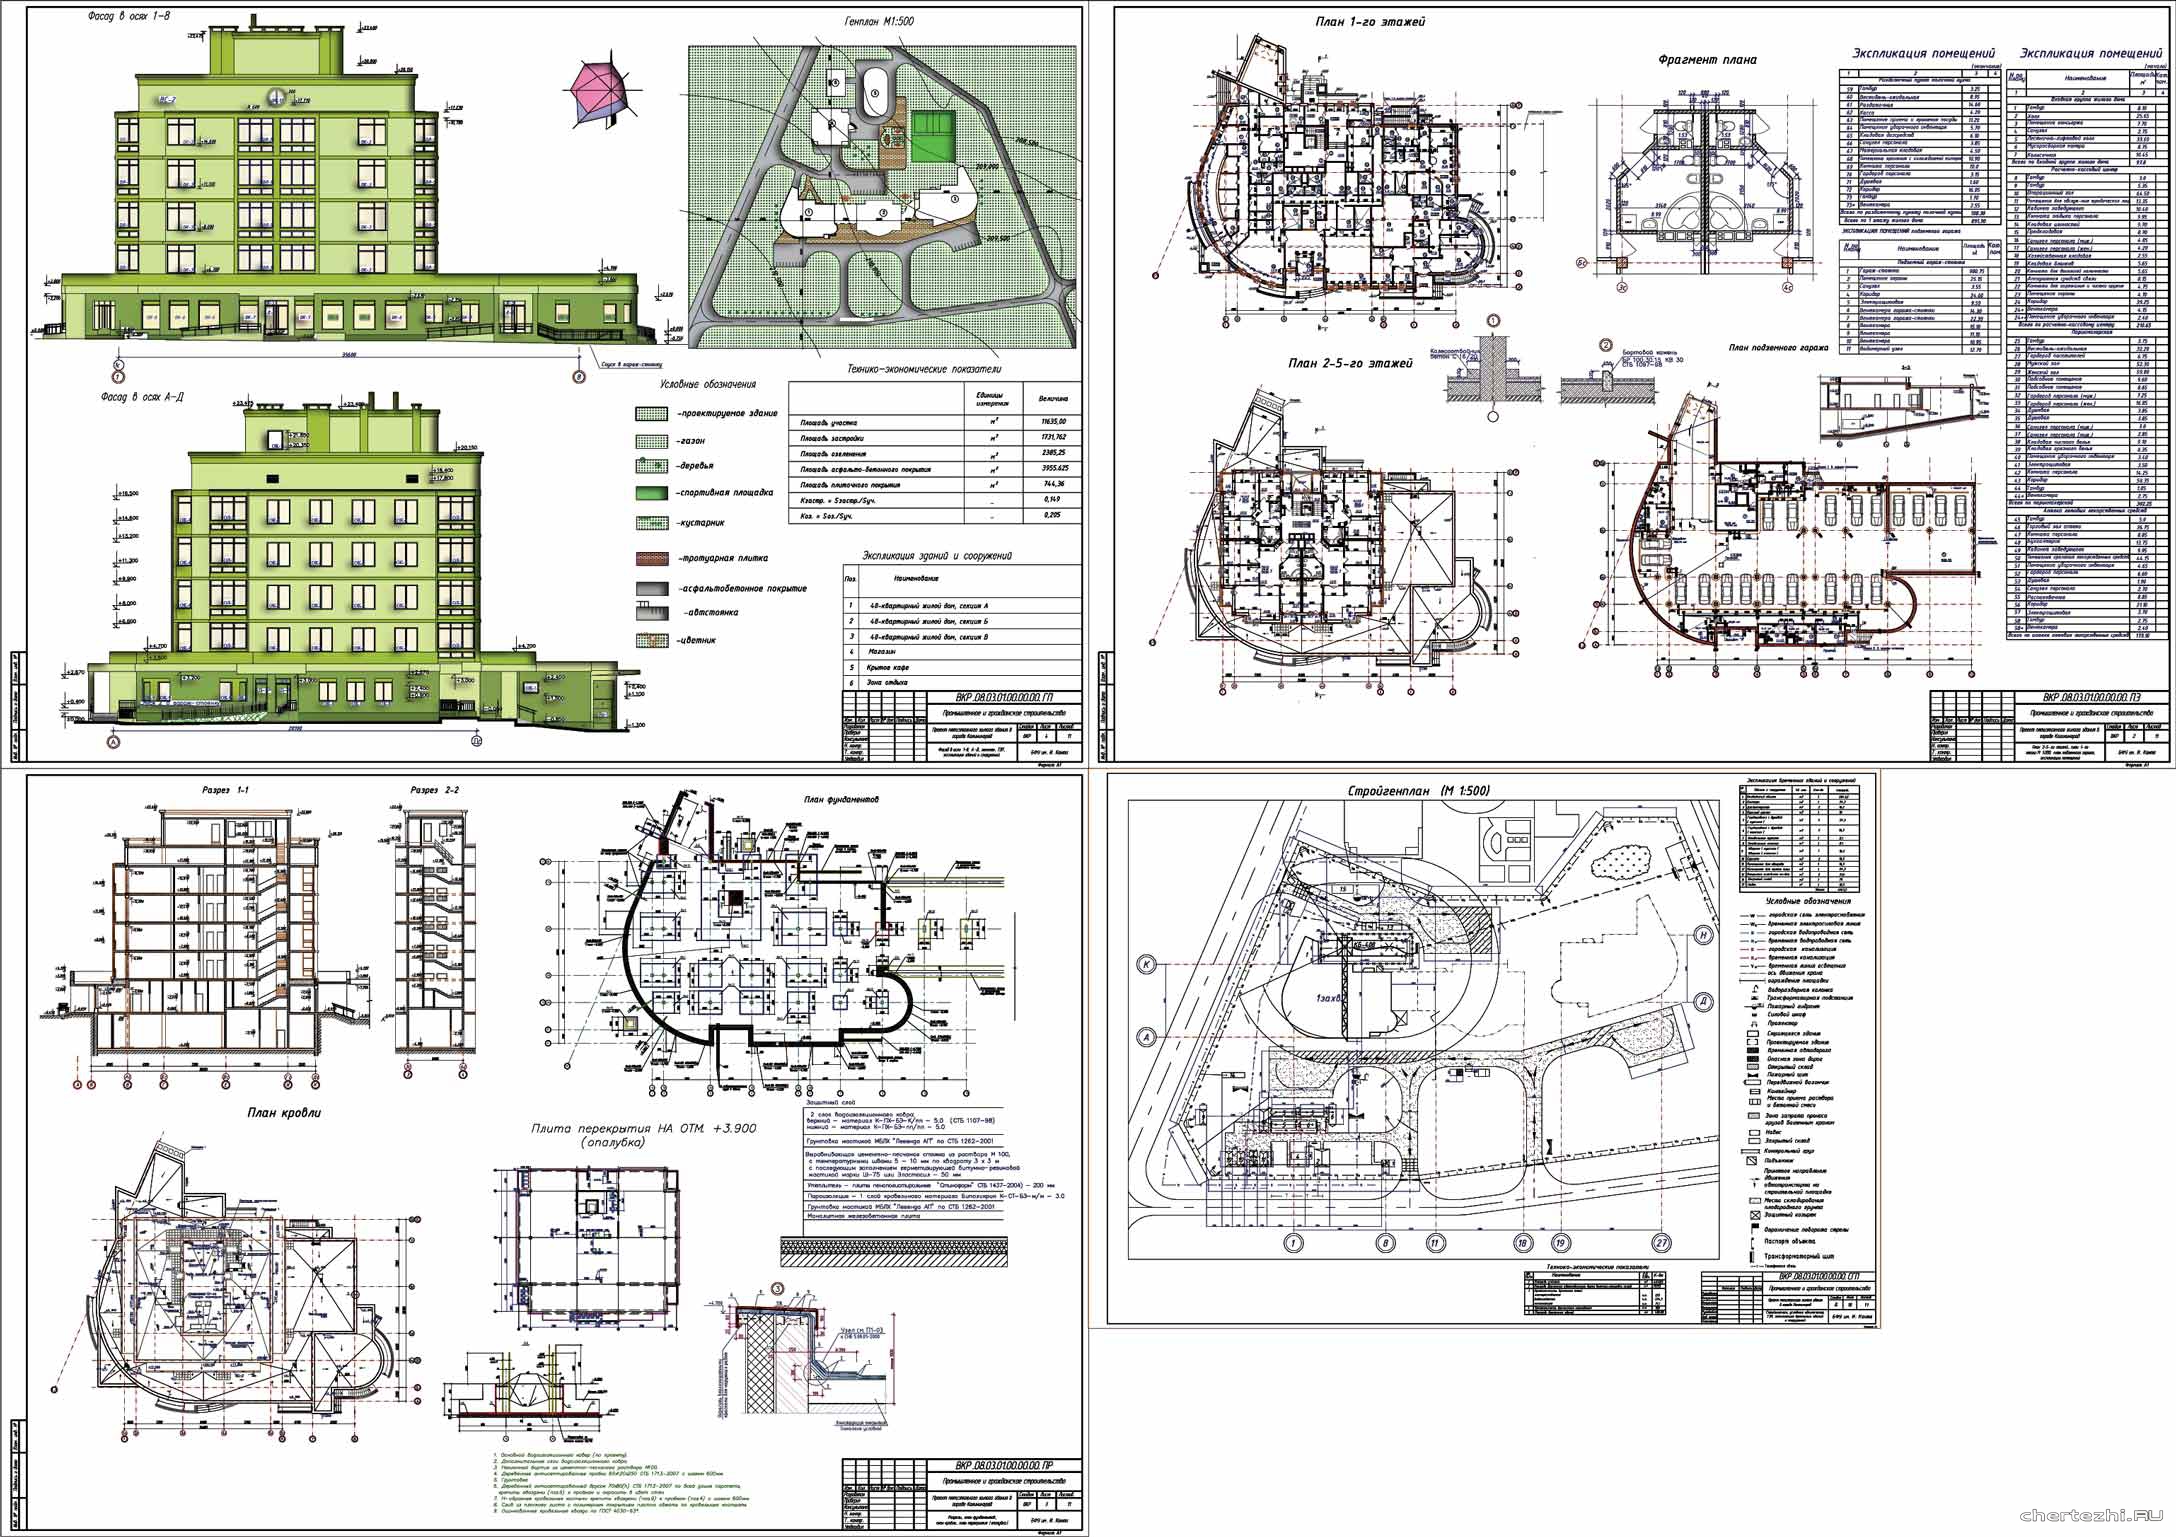 Дипломный проект - 5-ти этажный жилой дом 42,3 х 28,1 м в г. Калининград